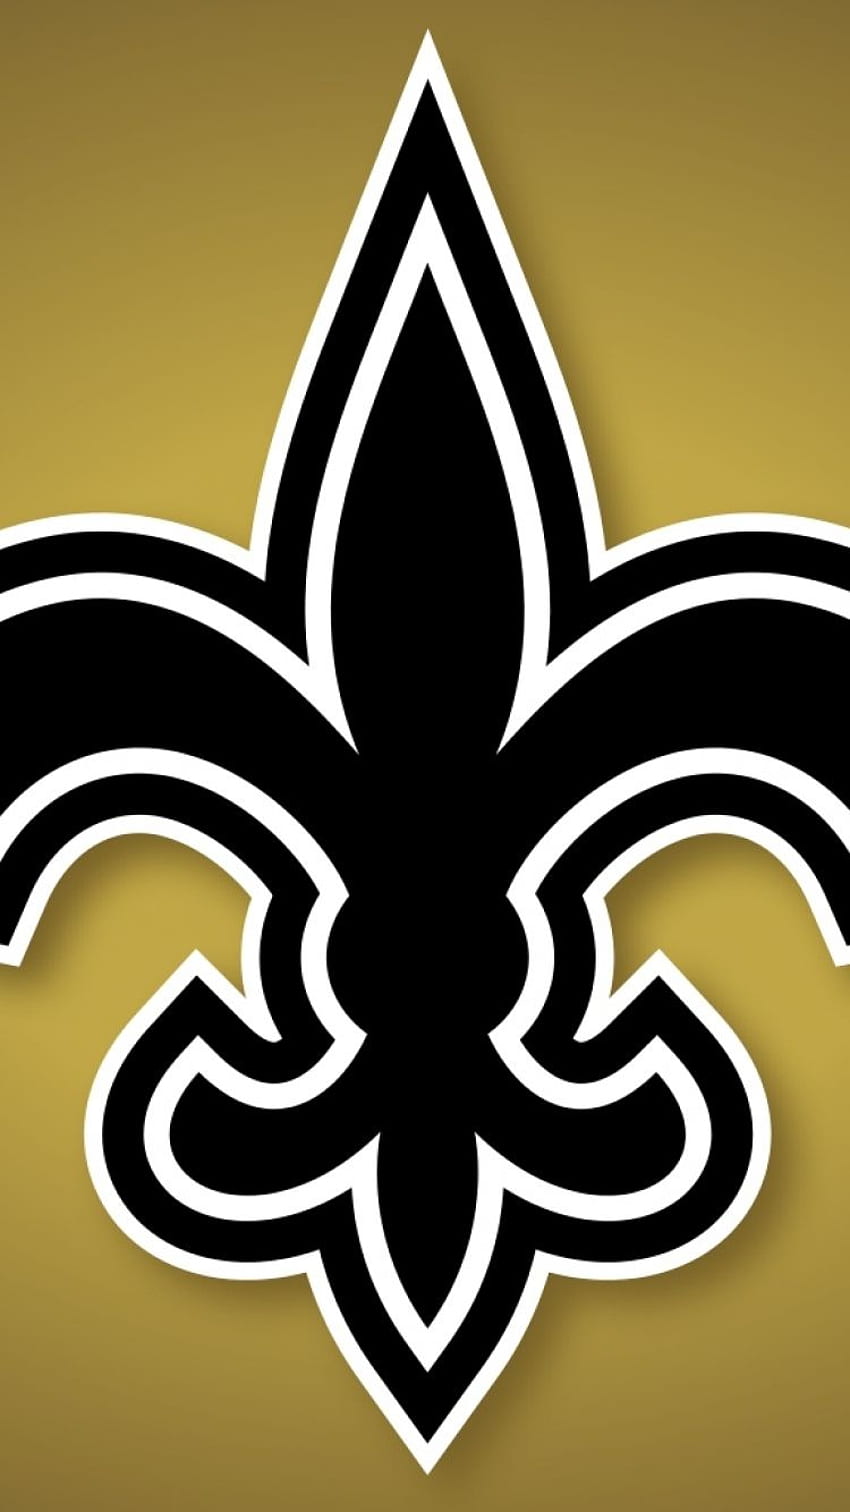 Saints iPhone - New Orleans Saints HD phone wallpaper